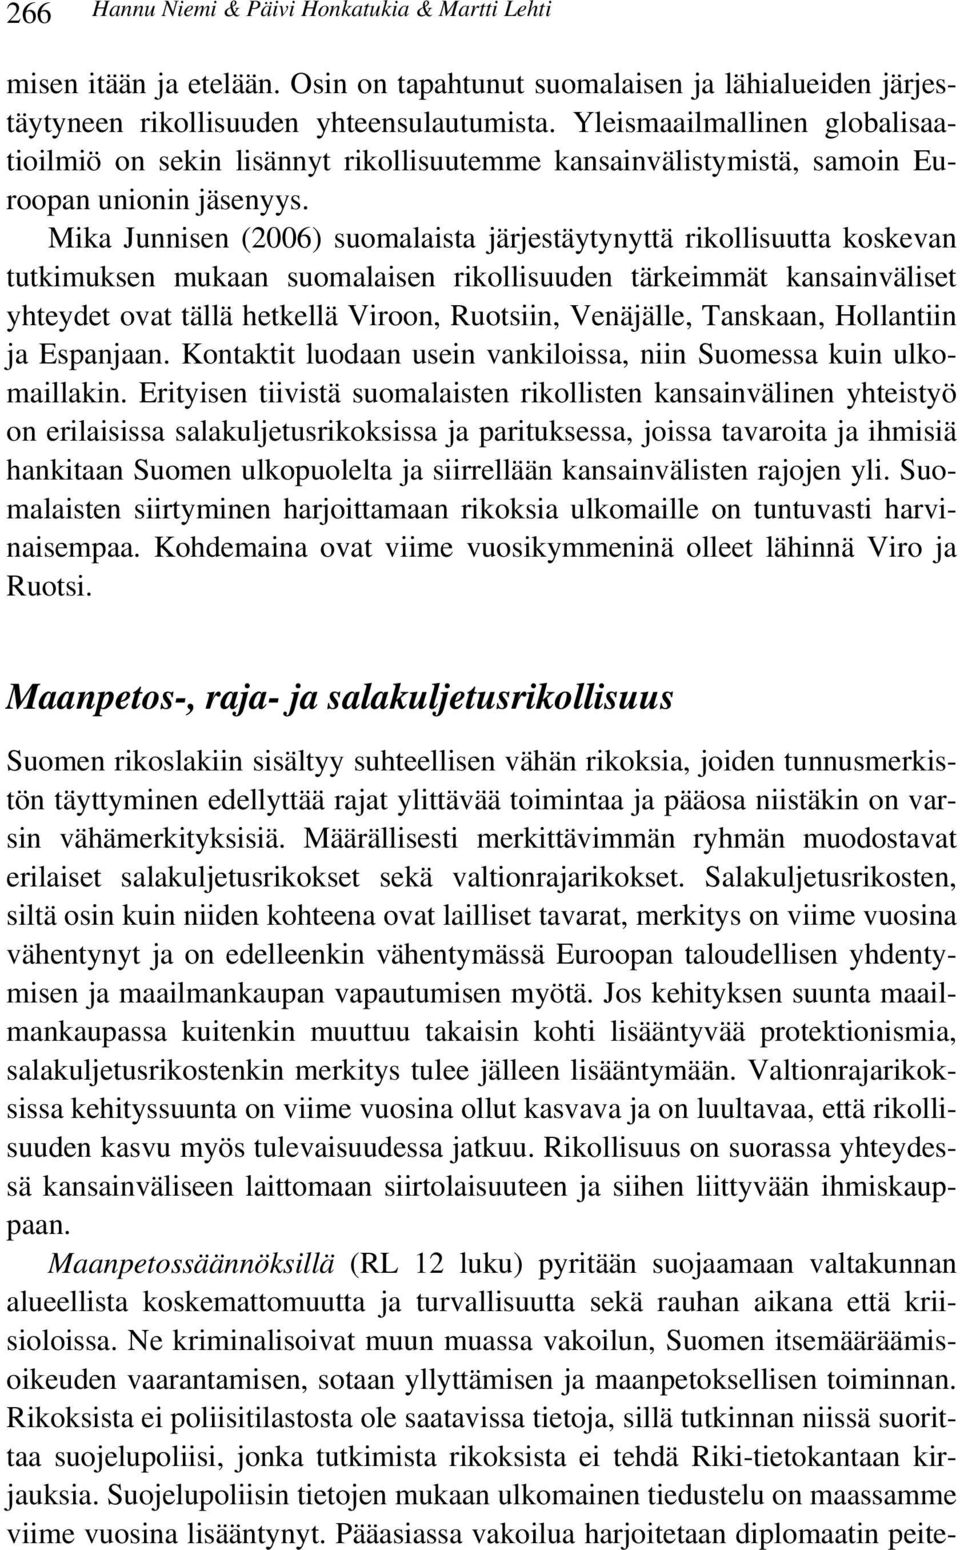 Mika Junnisen (2006) suomalaista järjestäytynyttä rikollisuutta koskevan tutkimuksen mukaan suomalaisen rikollisuuden tärkeimmät kansainväliset yhteydet ovat tällä hetkellä Viroon, Ruotsiin,